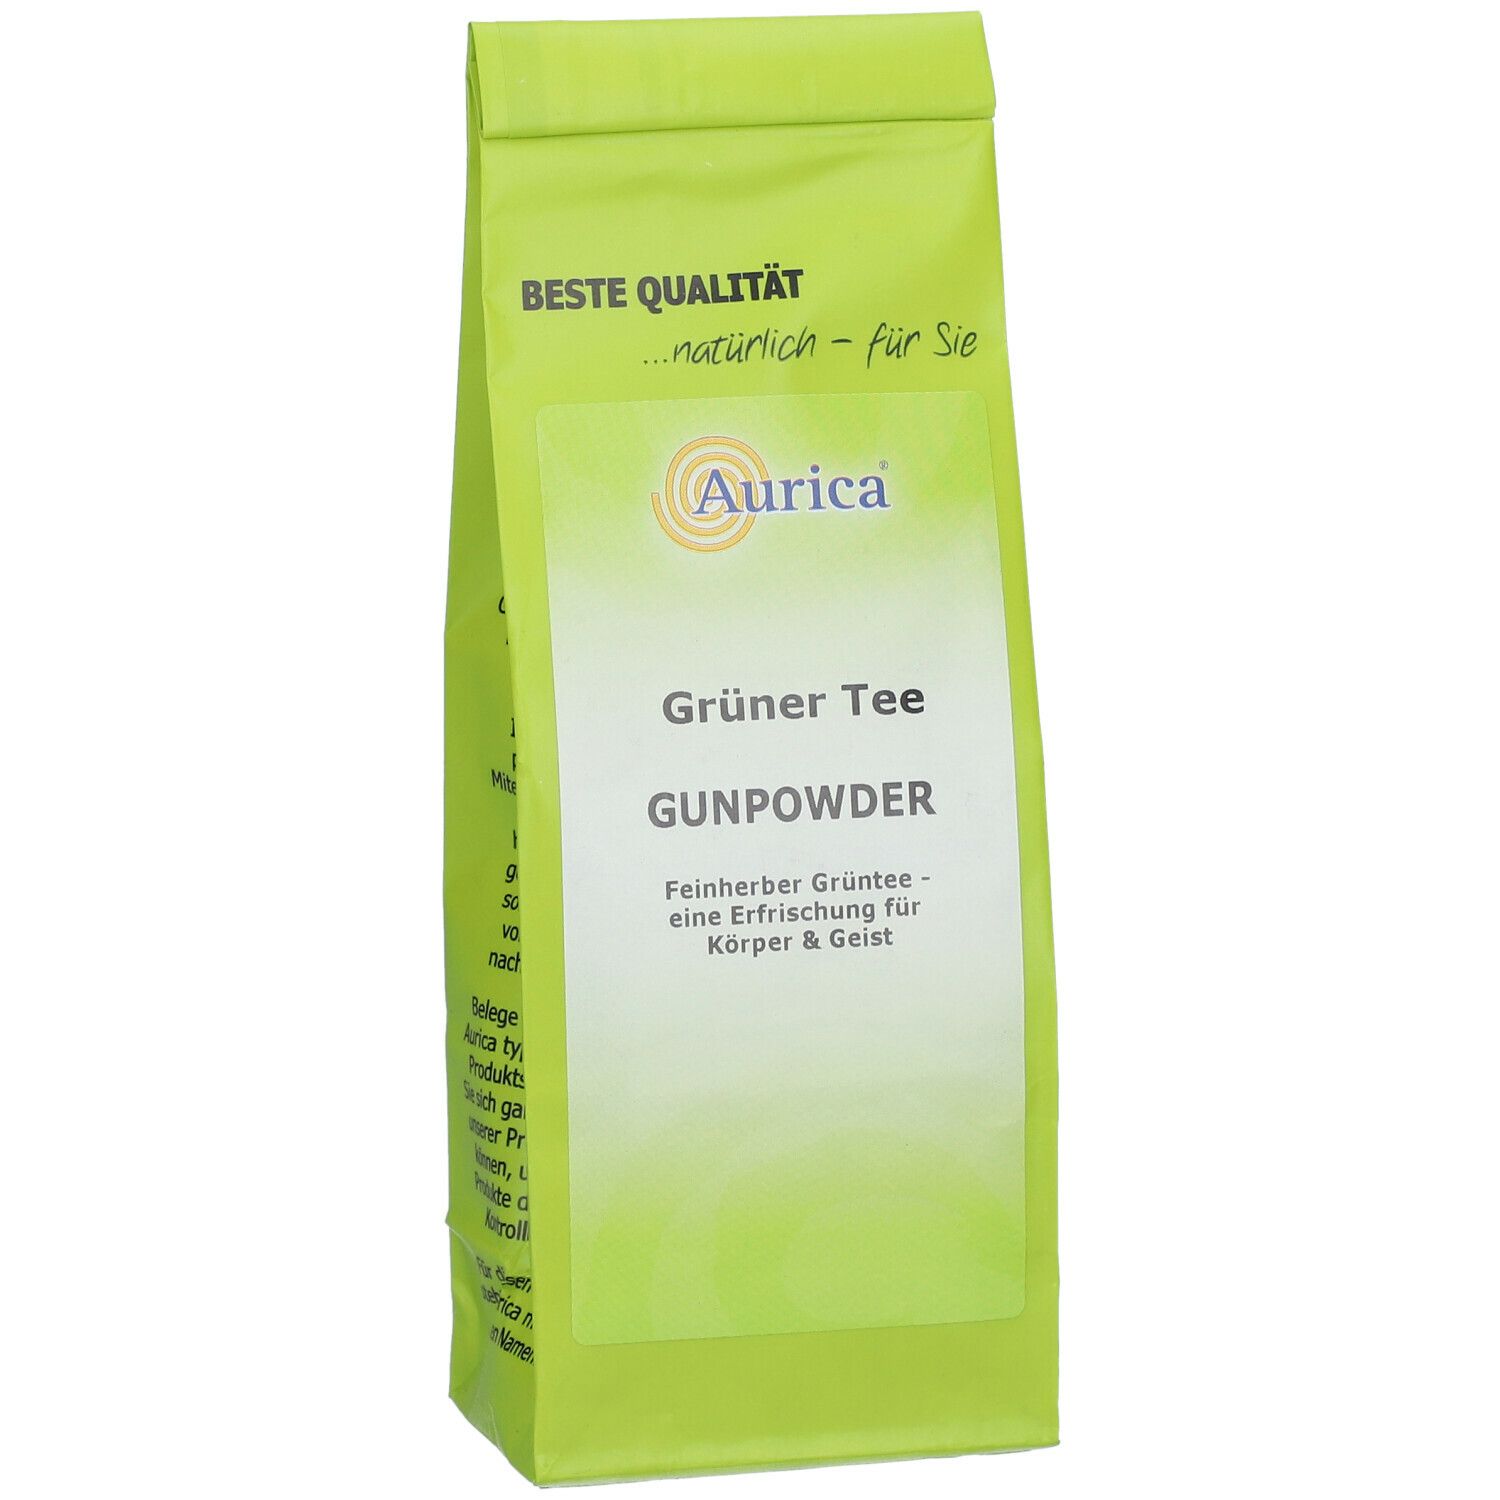 Aurica® Grüner Tee Gunpowder